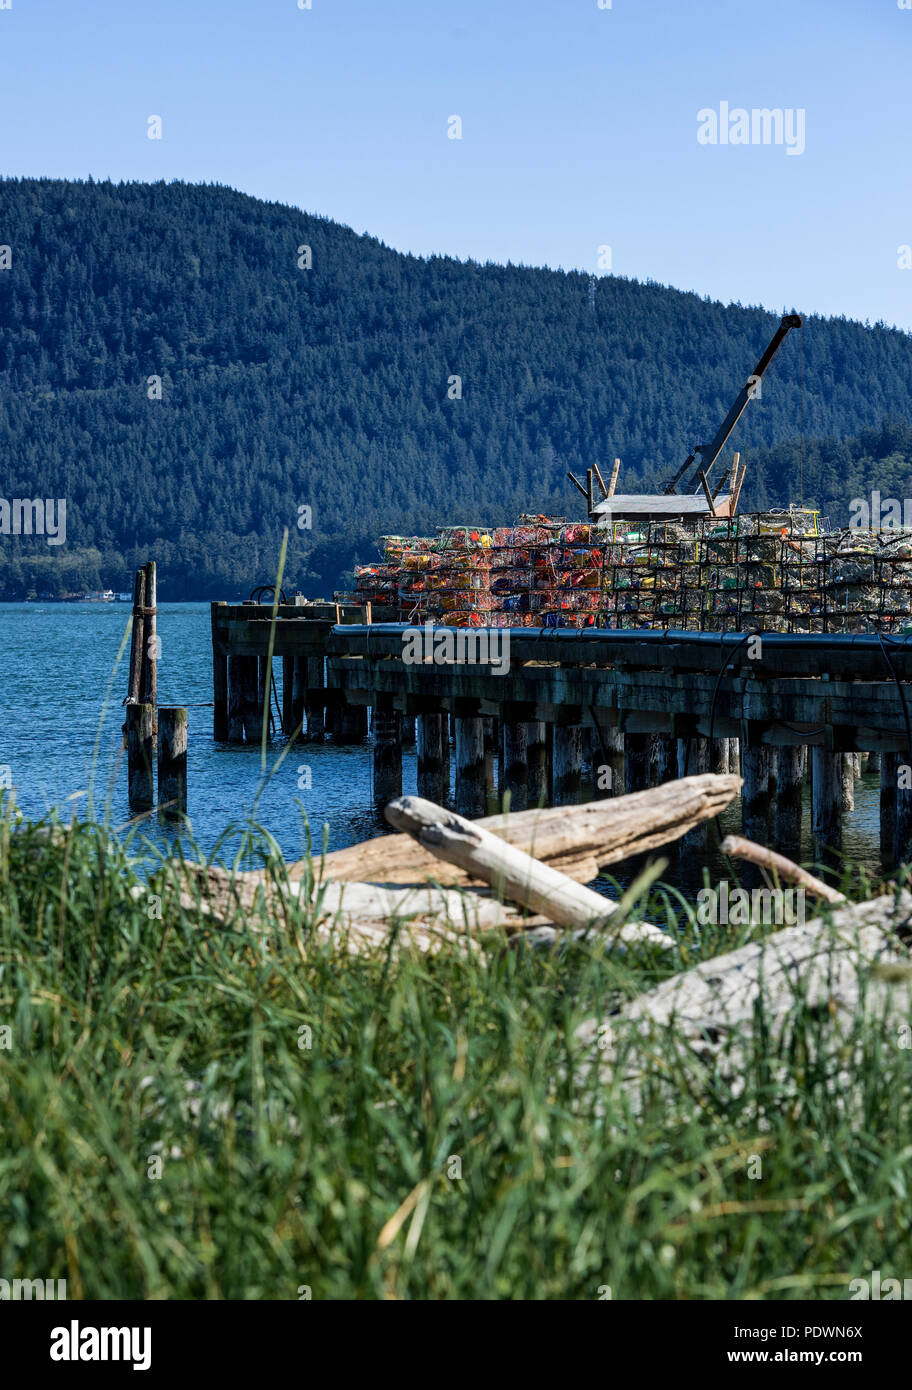 Crab fallen auf einem Dock gestapelt, Stachelbeere, Bellingham, Washington, USA. Stockfoto